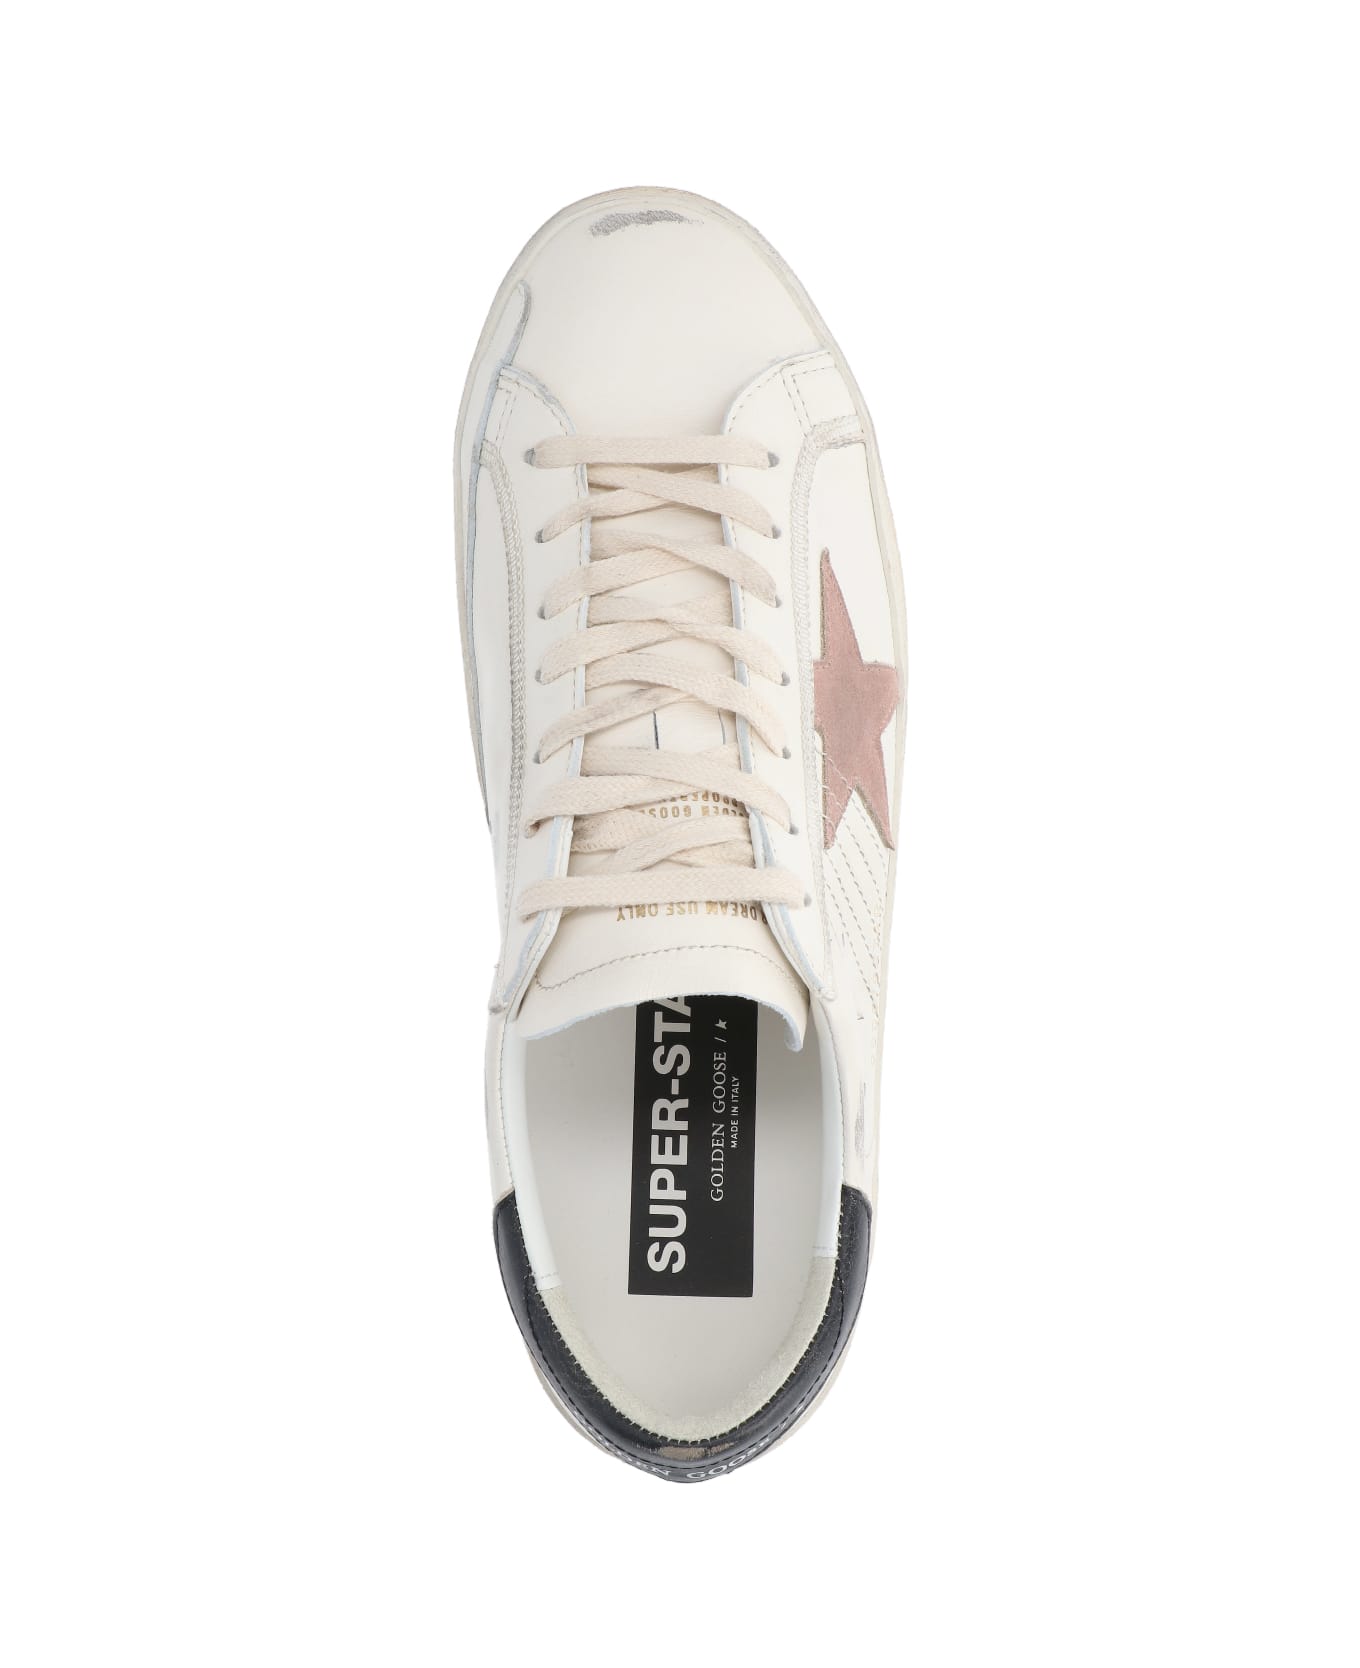 Golden Goose Superstar Sneakers - White スニーカー